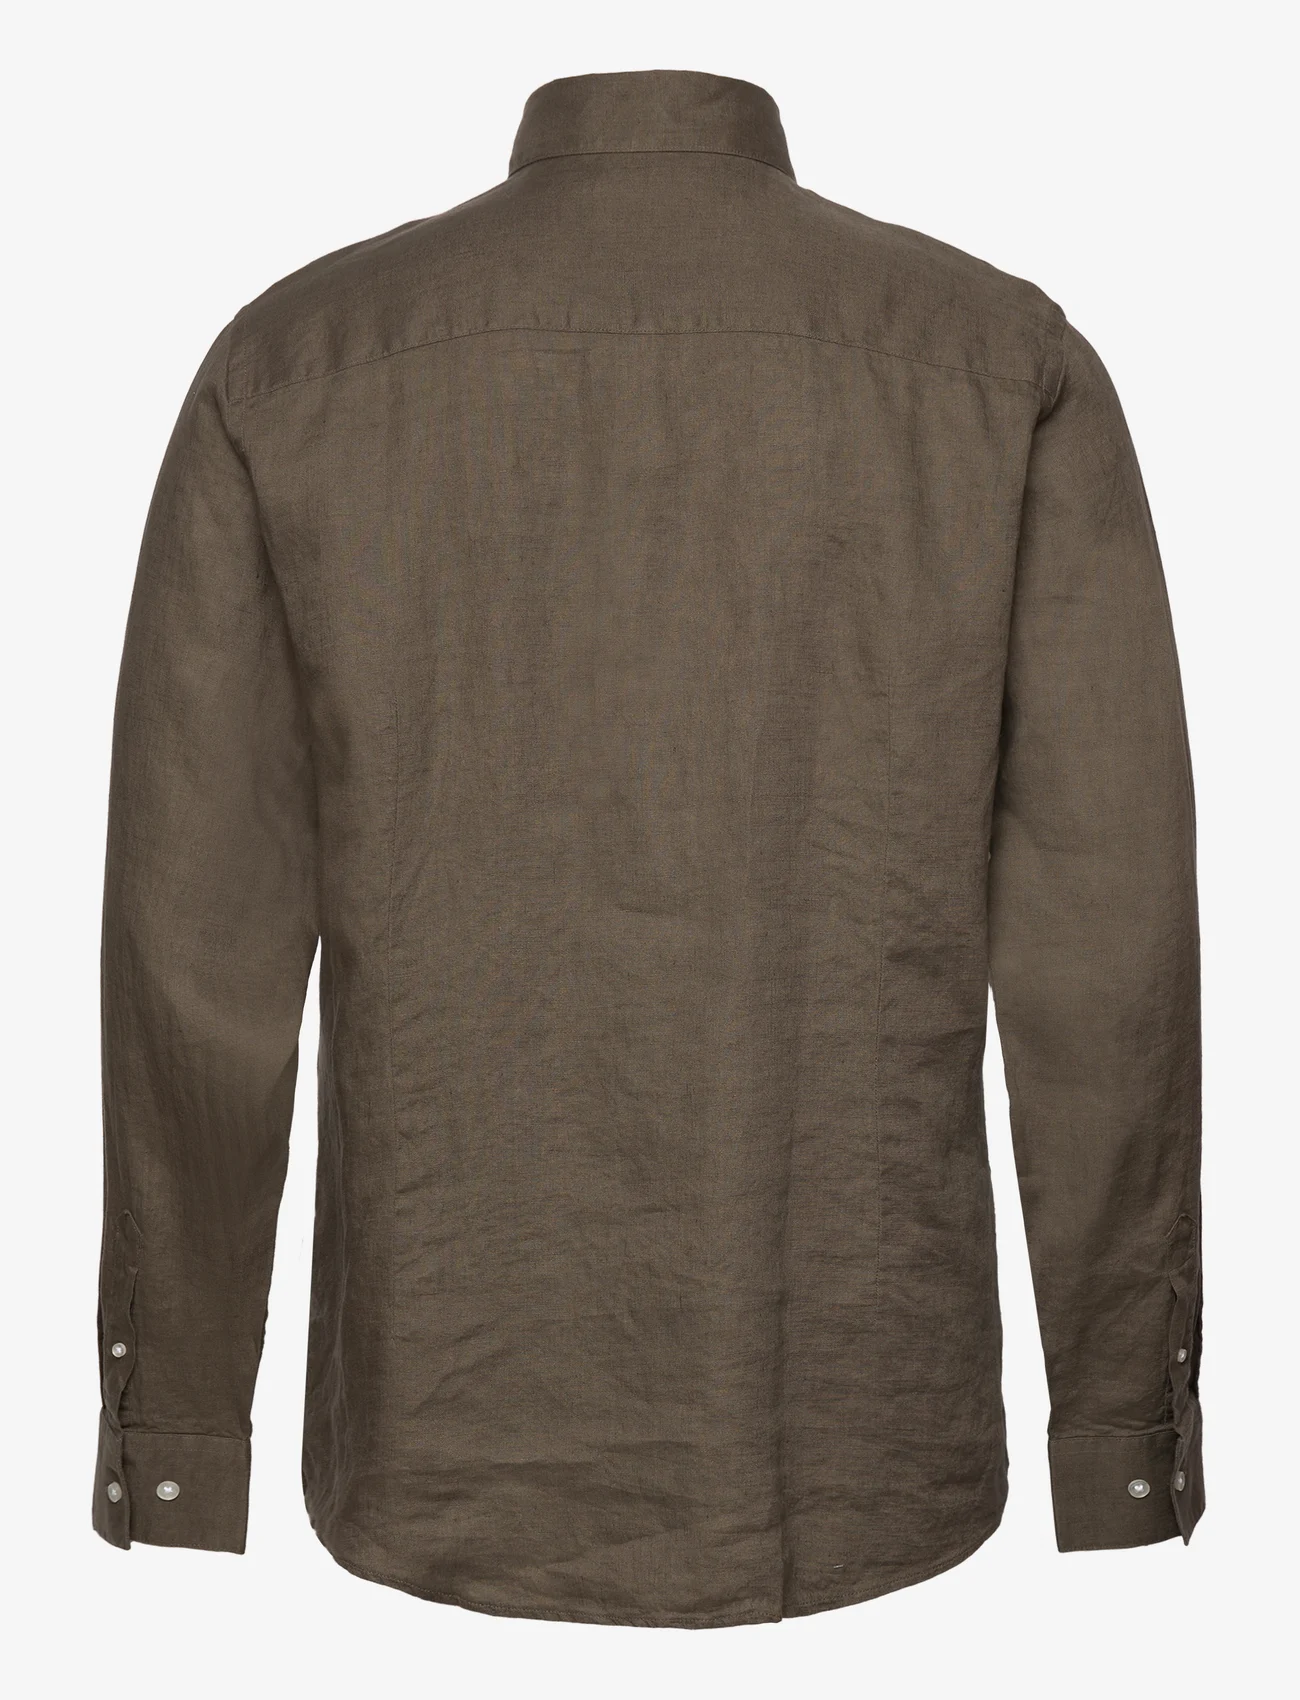 Bruun & Stengade - BS Bilbao Casual Modern Fit Shirt - hørskjorter - army - 1